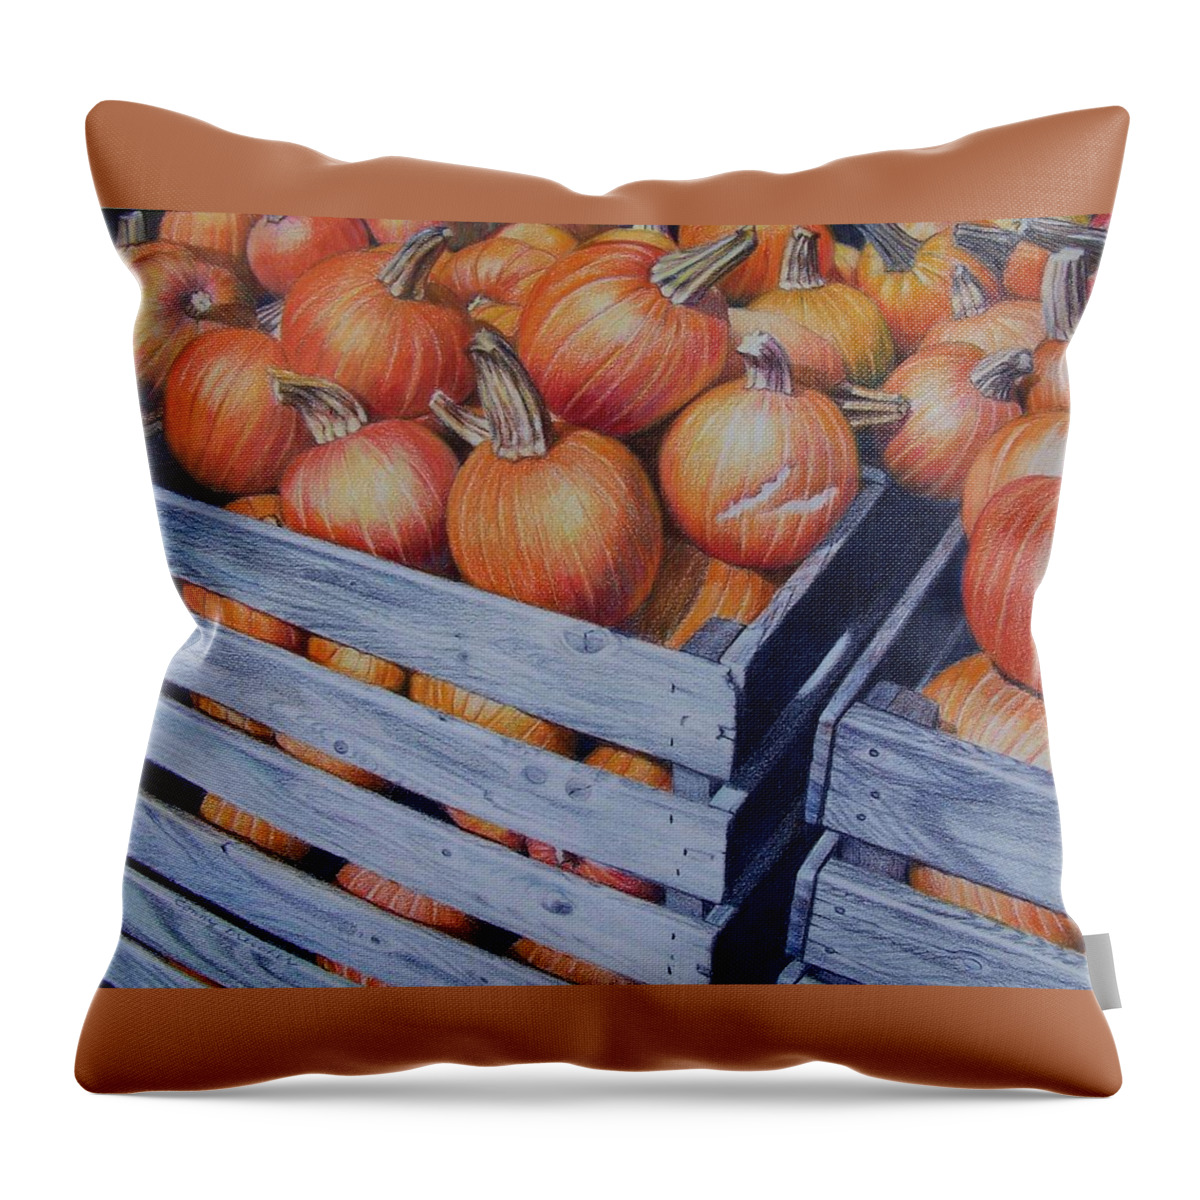 Pumpkins Throw Pillow featuring the painting Pumpkins two by Constance Drescher